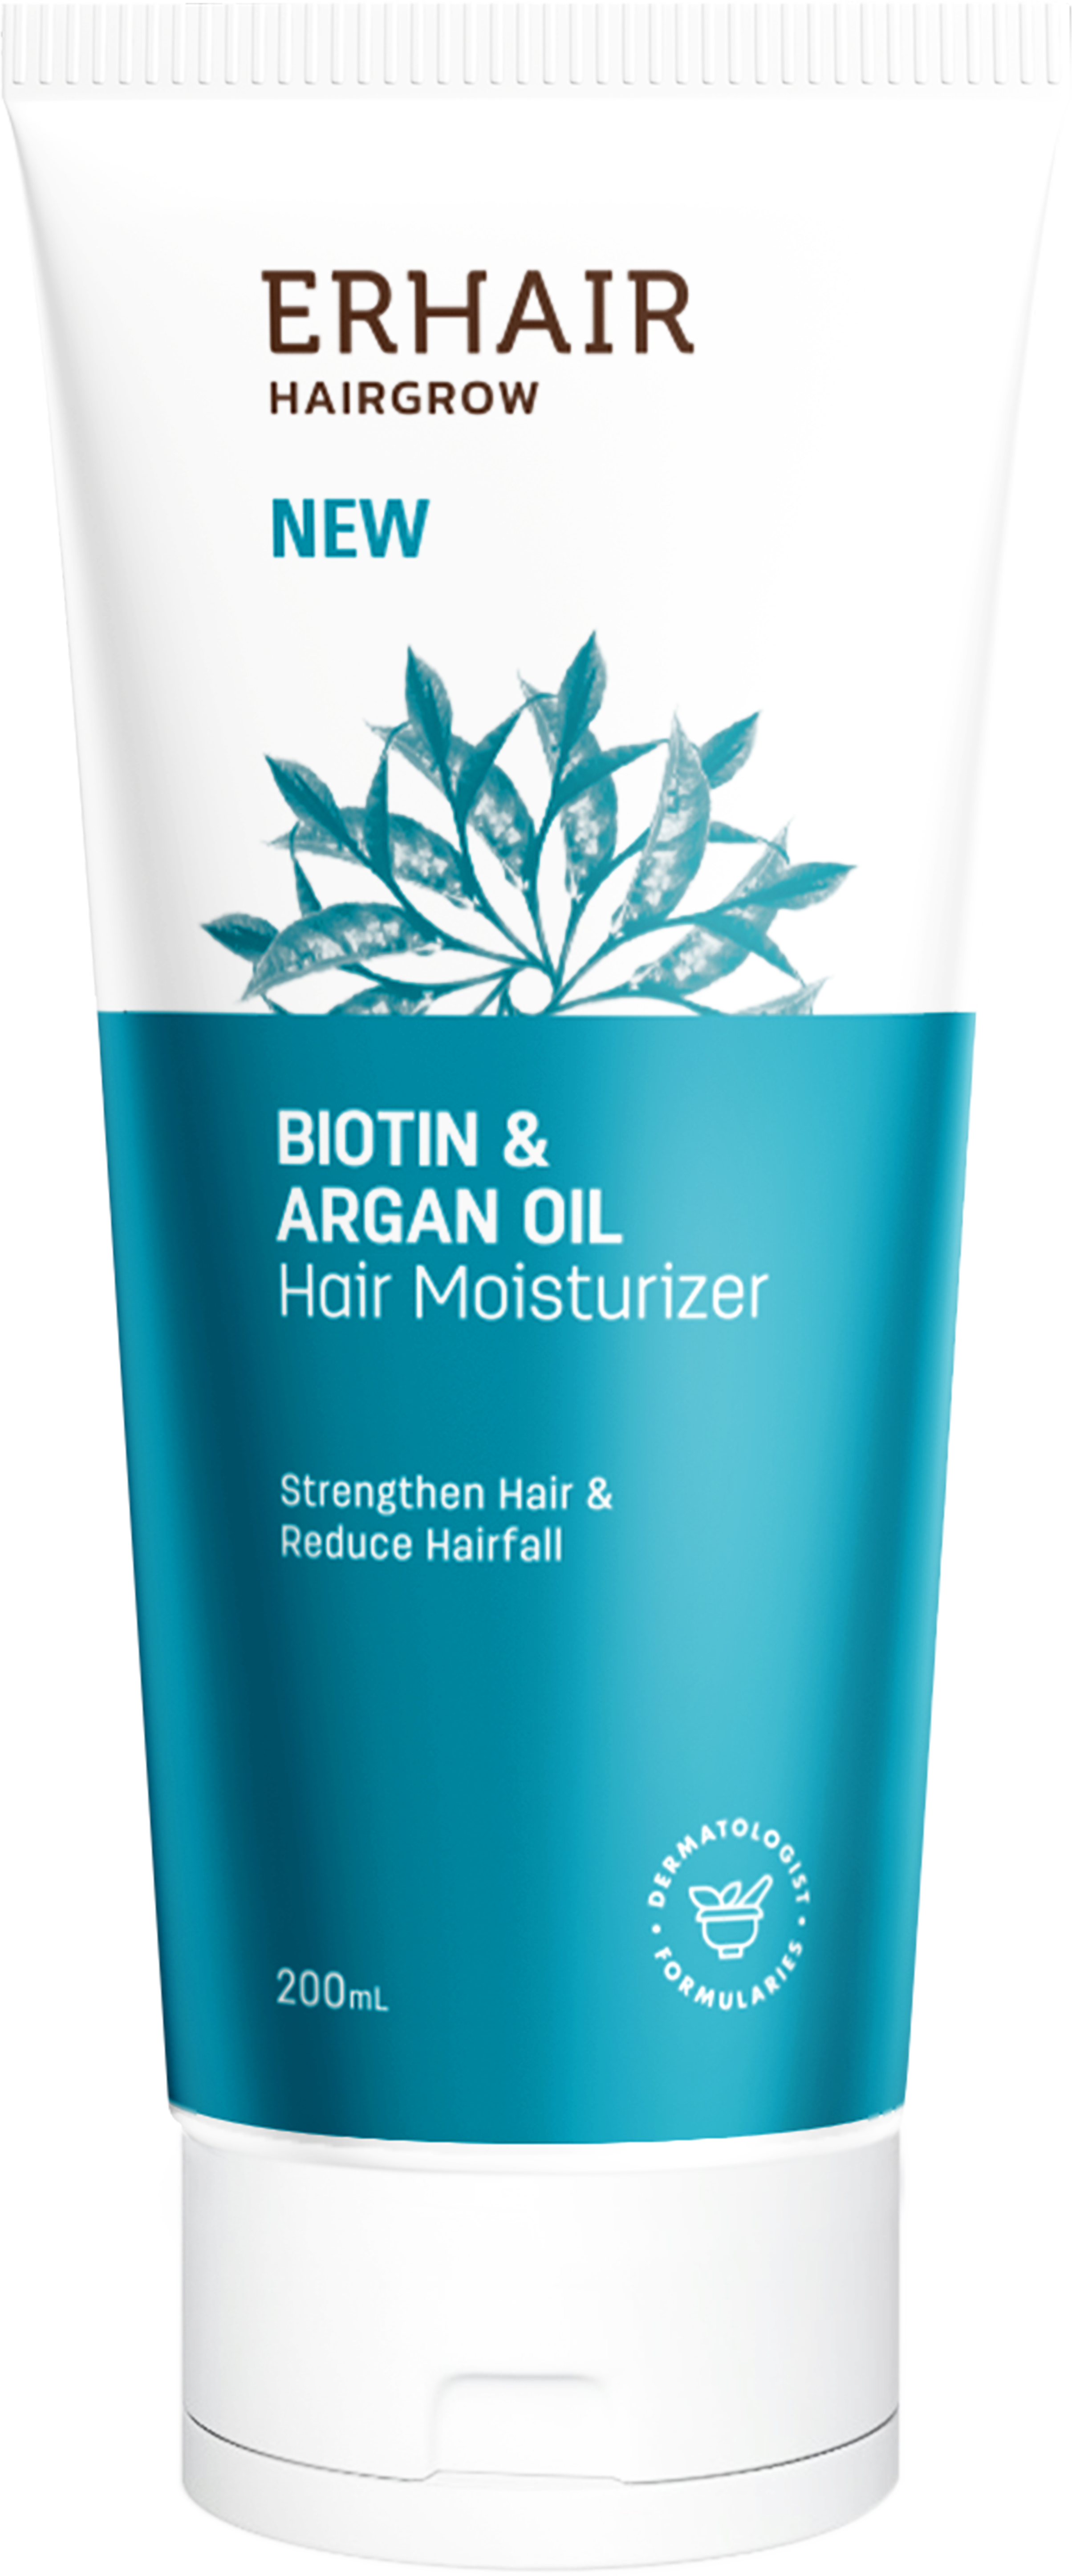 HairGrow Biotin & Argan Oil Hair Moisturizer